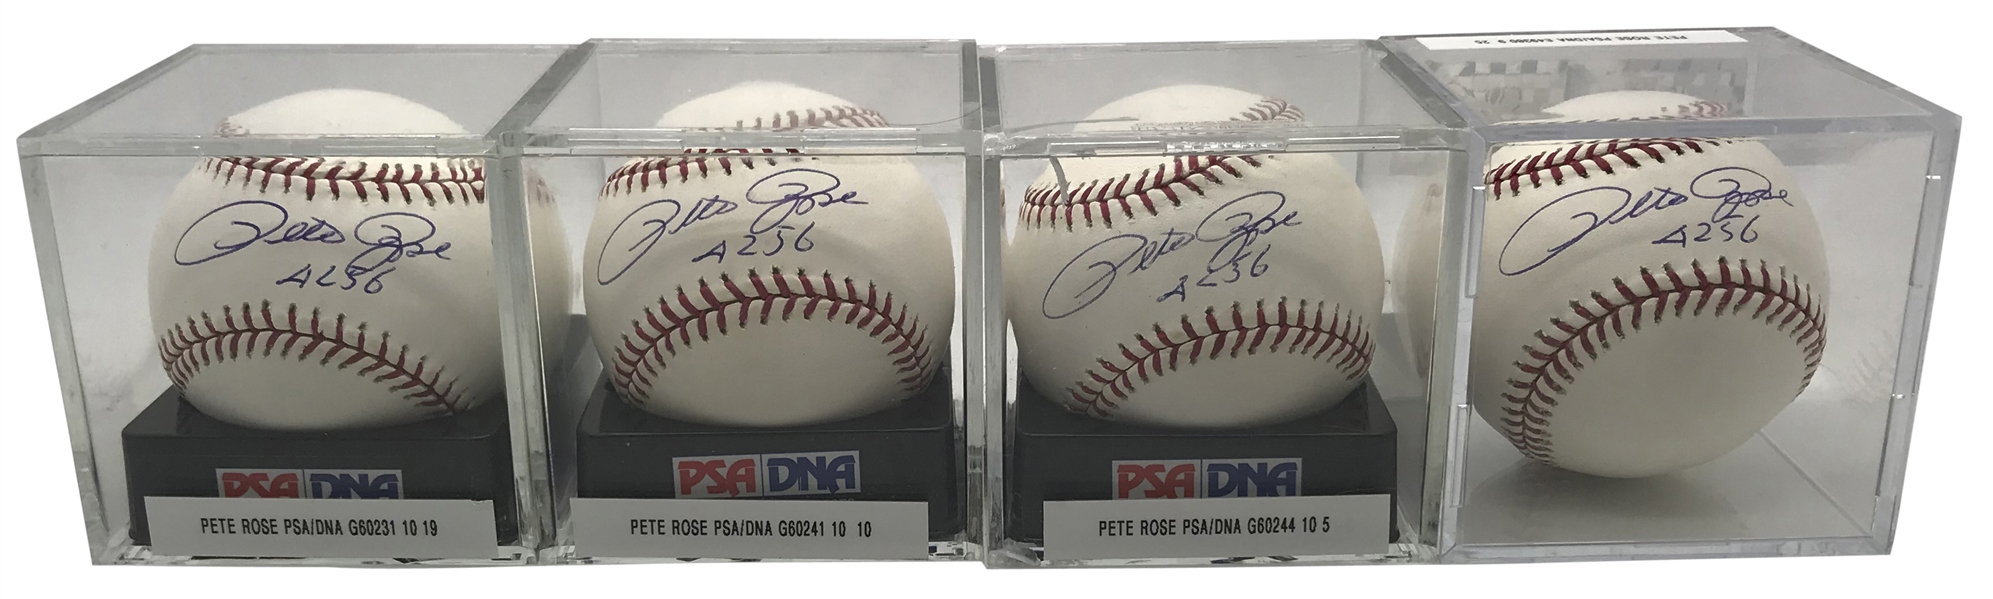 Lot of Four (4) Pete Rose Signed & "4256" Inscribed OML Baseballs PSA/DNA Graded 9 & 10!